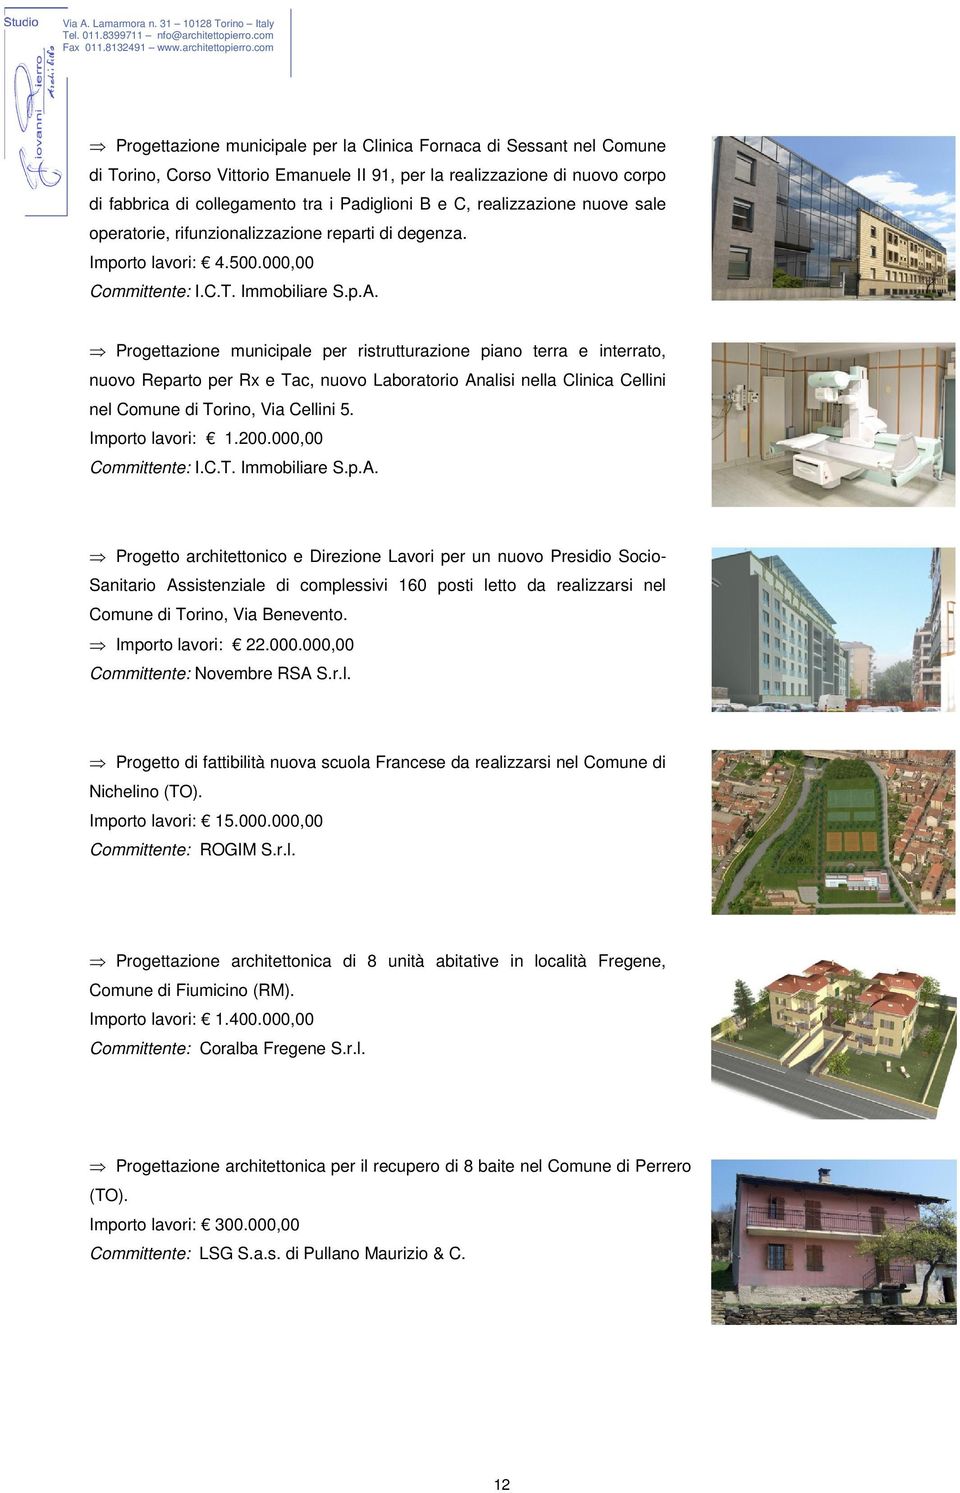 Progettazione municipale per ristrutturazione piano terra e interrato, nuovo Reparto per Rx e Tac, nuovo Laboratorio Analisi nella Clinica Cellini nel Comune di Torino, Via Cellini 5.